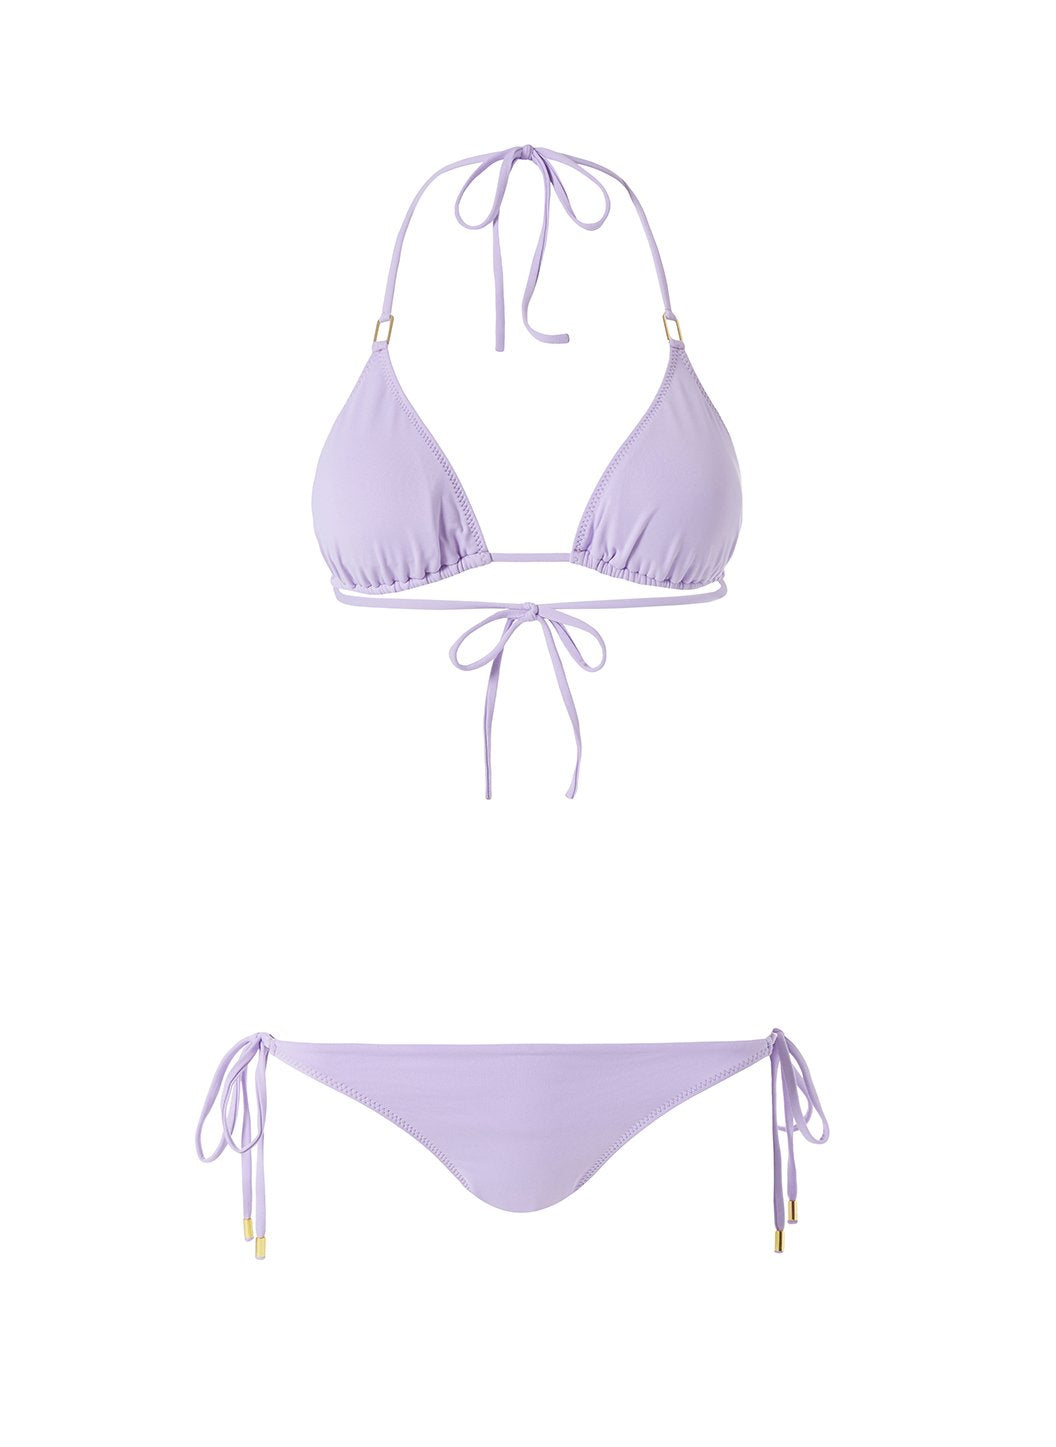 Cancun Lilac Bikini Cutout 